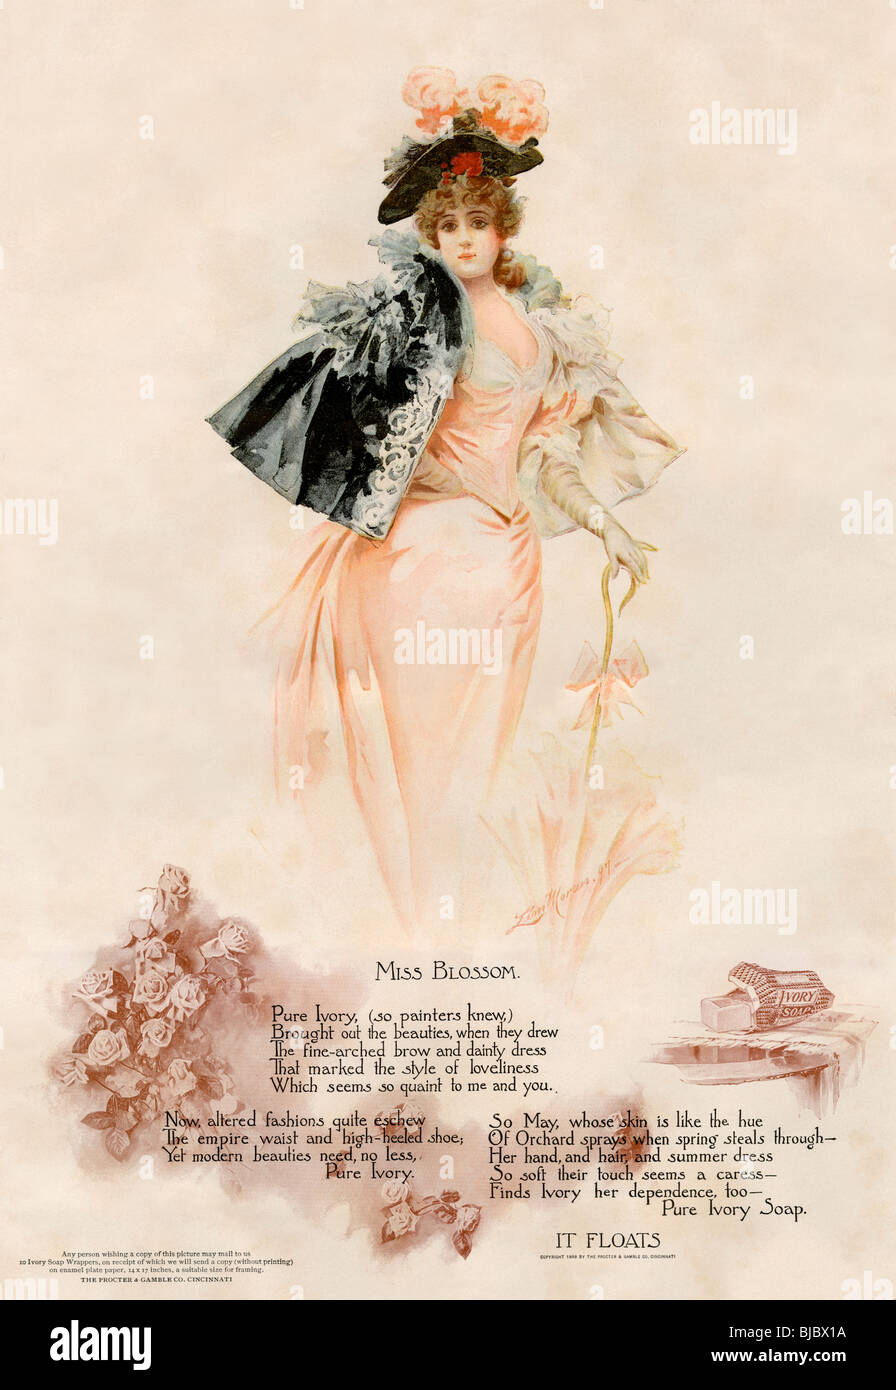 Pubblicità per sapone Ivory bellissime Miss Blossom, 1890s. Litografia a colori Foto Stock